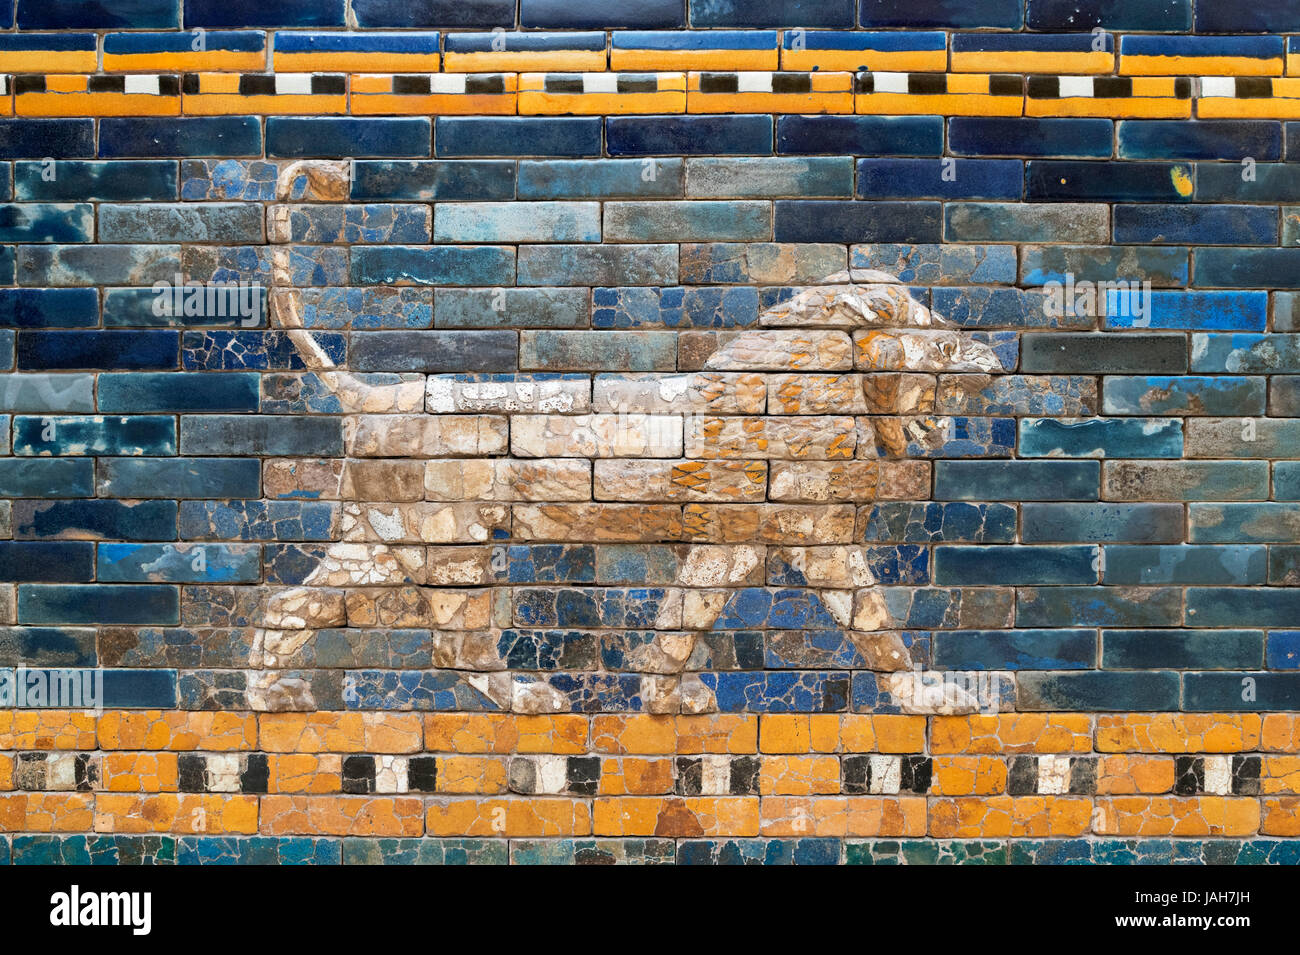 Löwe-Mosaik aus farbigen glasierte Ziegel auf der Prozession Straße von Babylon (Rekonstruktion), c.604-562 v. Chr., Pergamon Museum, Berlin, Deutschland Stockfoto